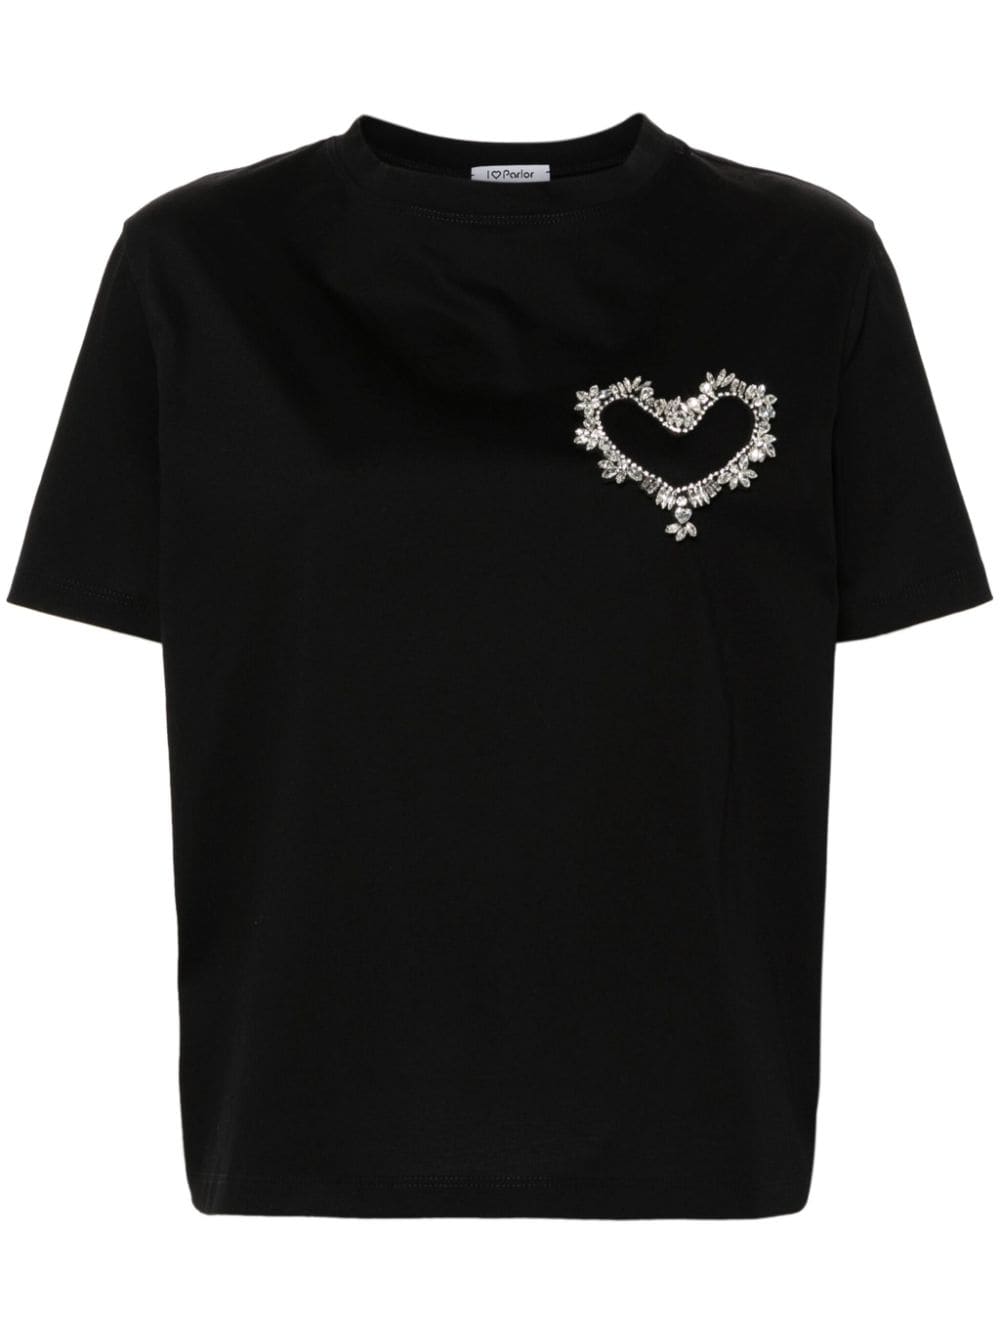 Parlor T-shirt verfraaid met kristallen Zwart